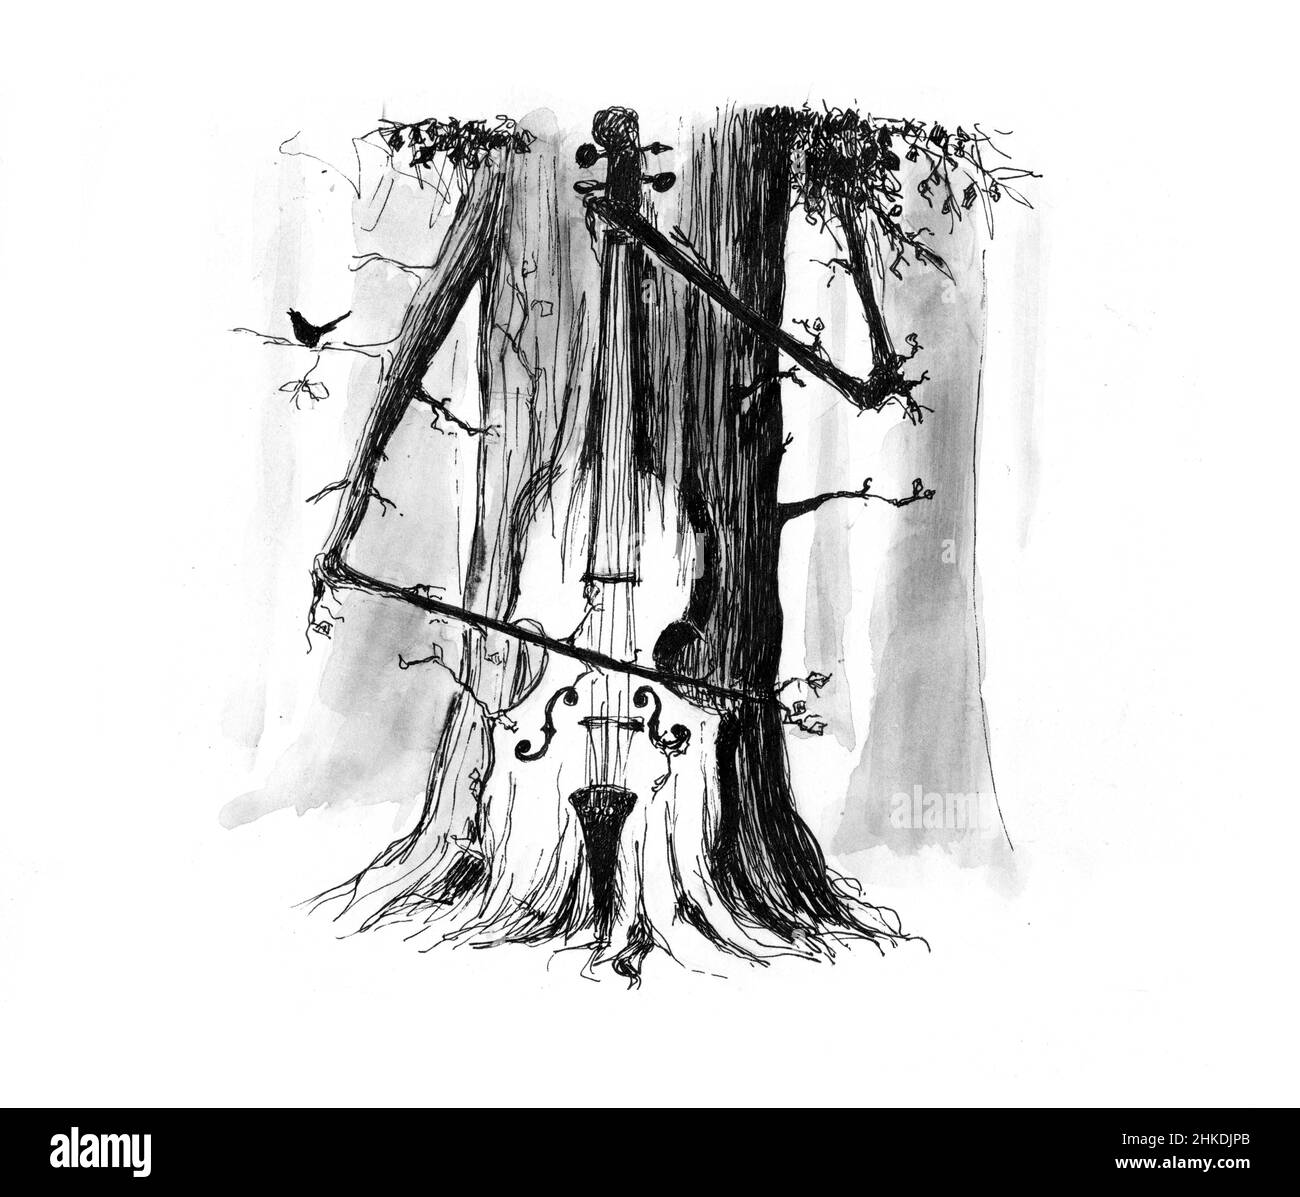 Naturmusik, Naturklänge, Entspannungsmusik. Diese Zeichnung veranschaulicht es. Ein Baum, der den Kontrabass spielt. Schwarz-weiße Stiftzeichnung. Aquarell Stockfoto